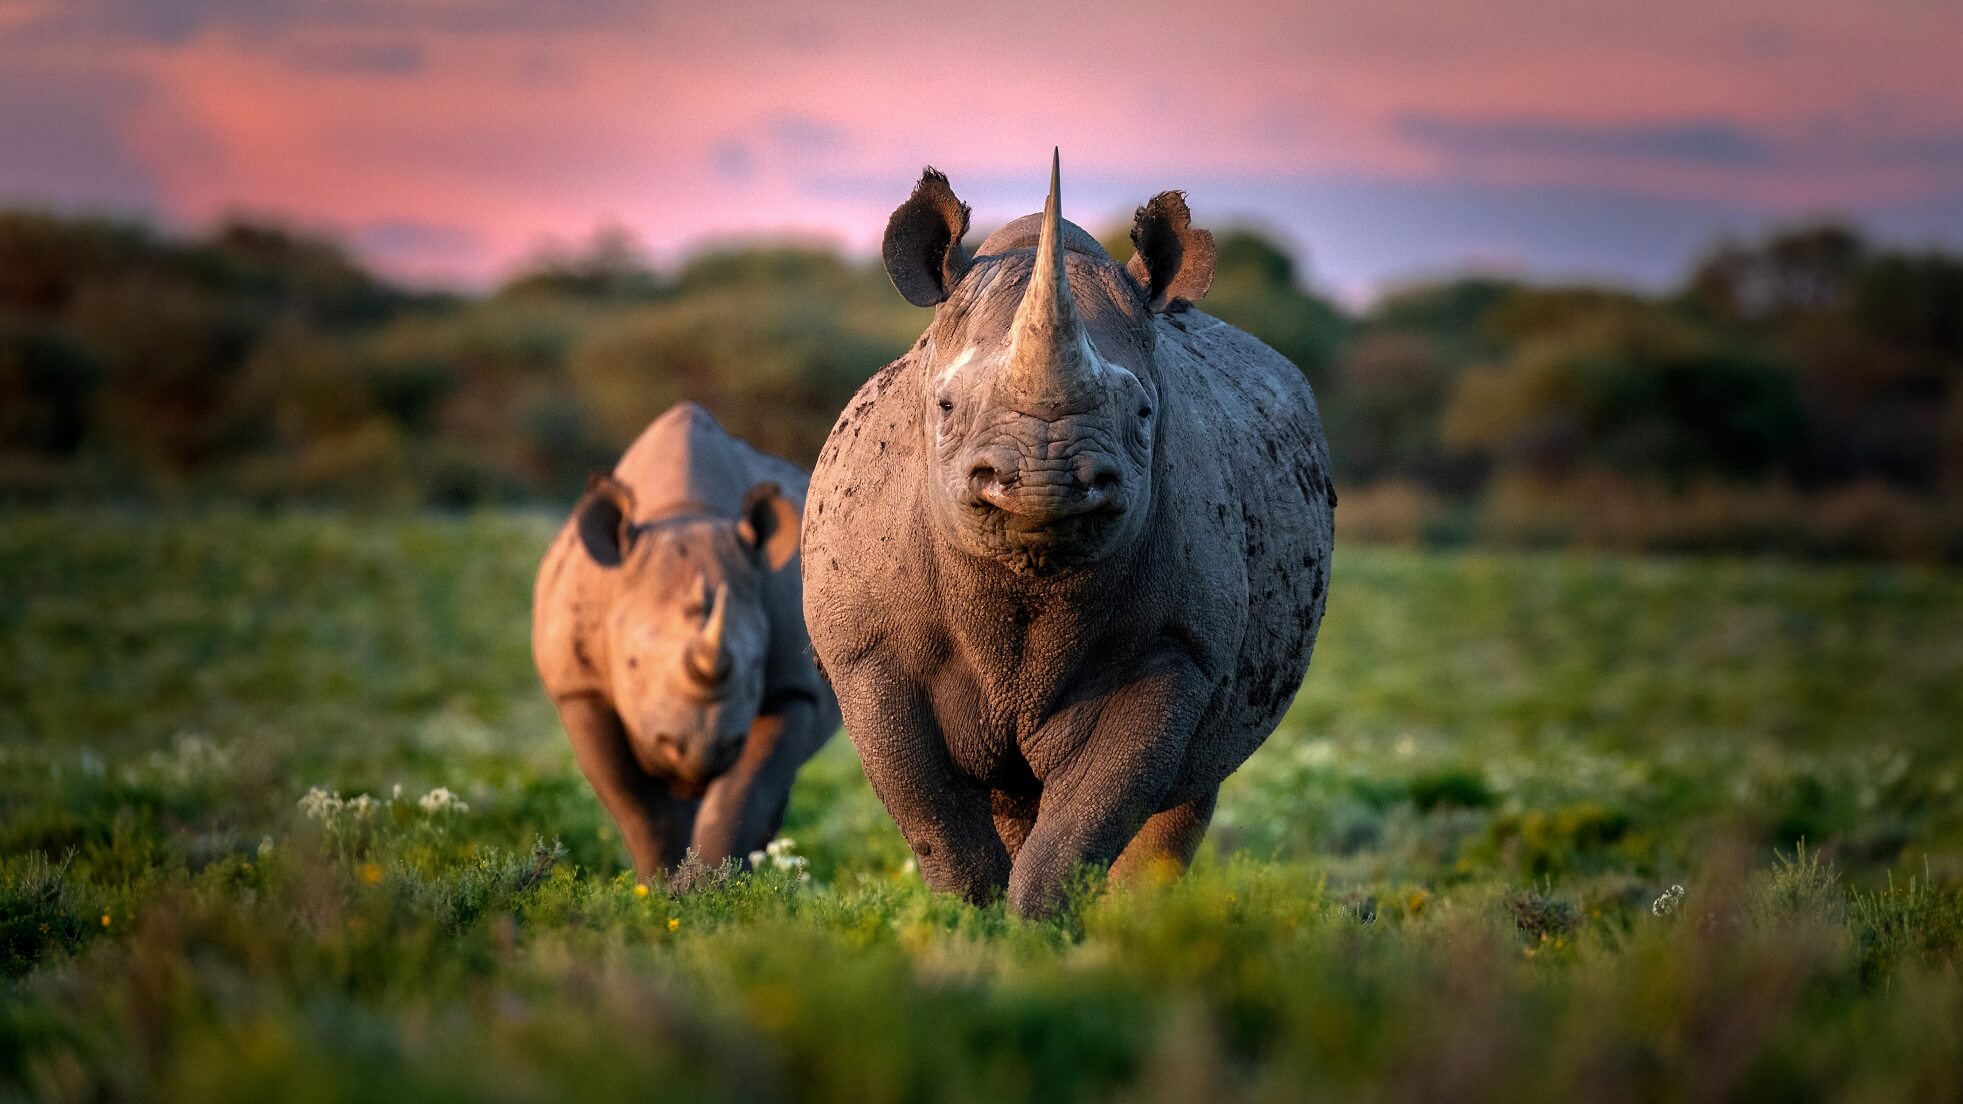 Help to save black rhinos